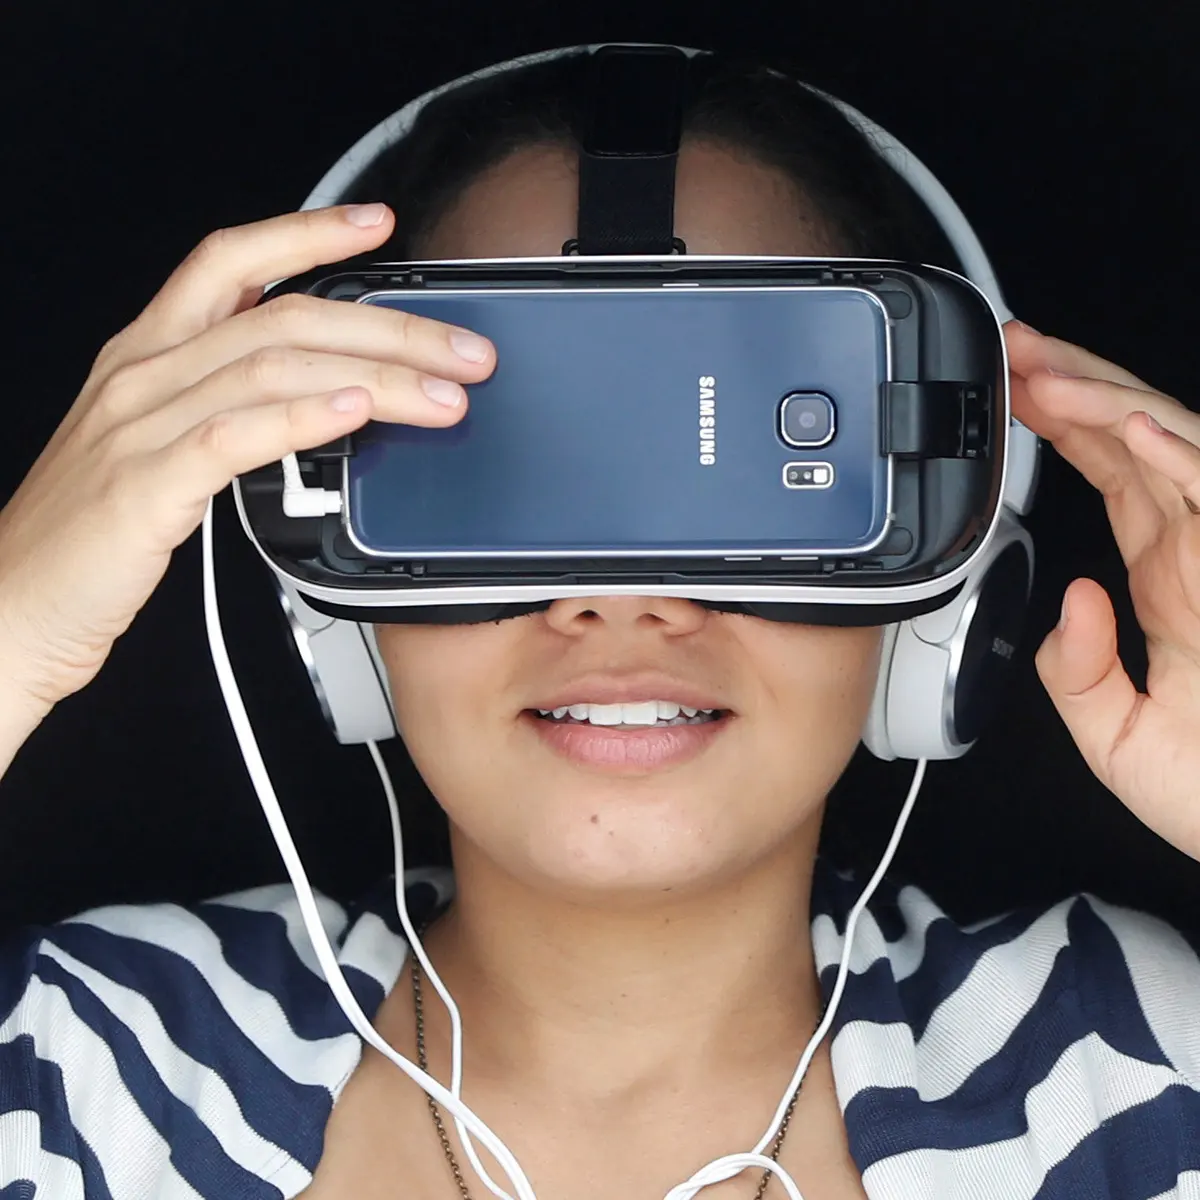 图片展示一位女士戴着虚拟现实头盔和耳机，似乎正在体验沉浸式的VR内容。她穿着条纹衣服，表情轻松。